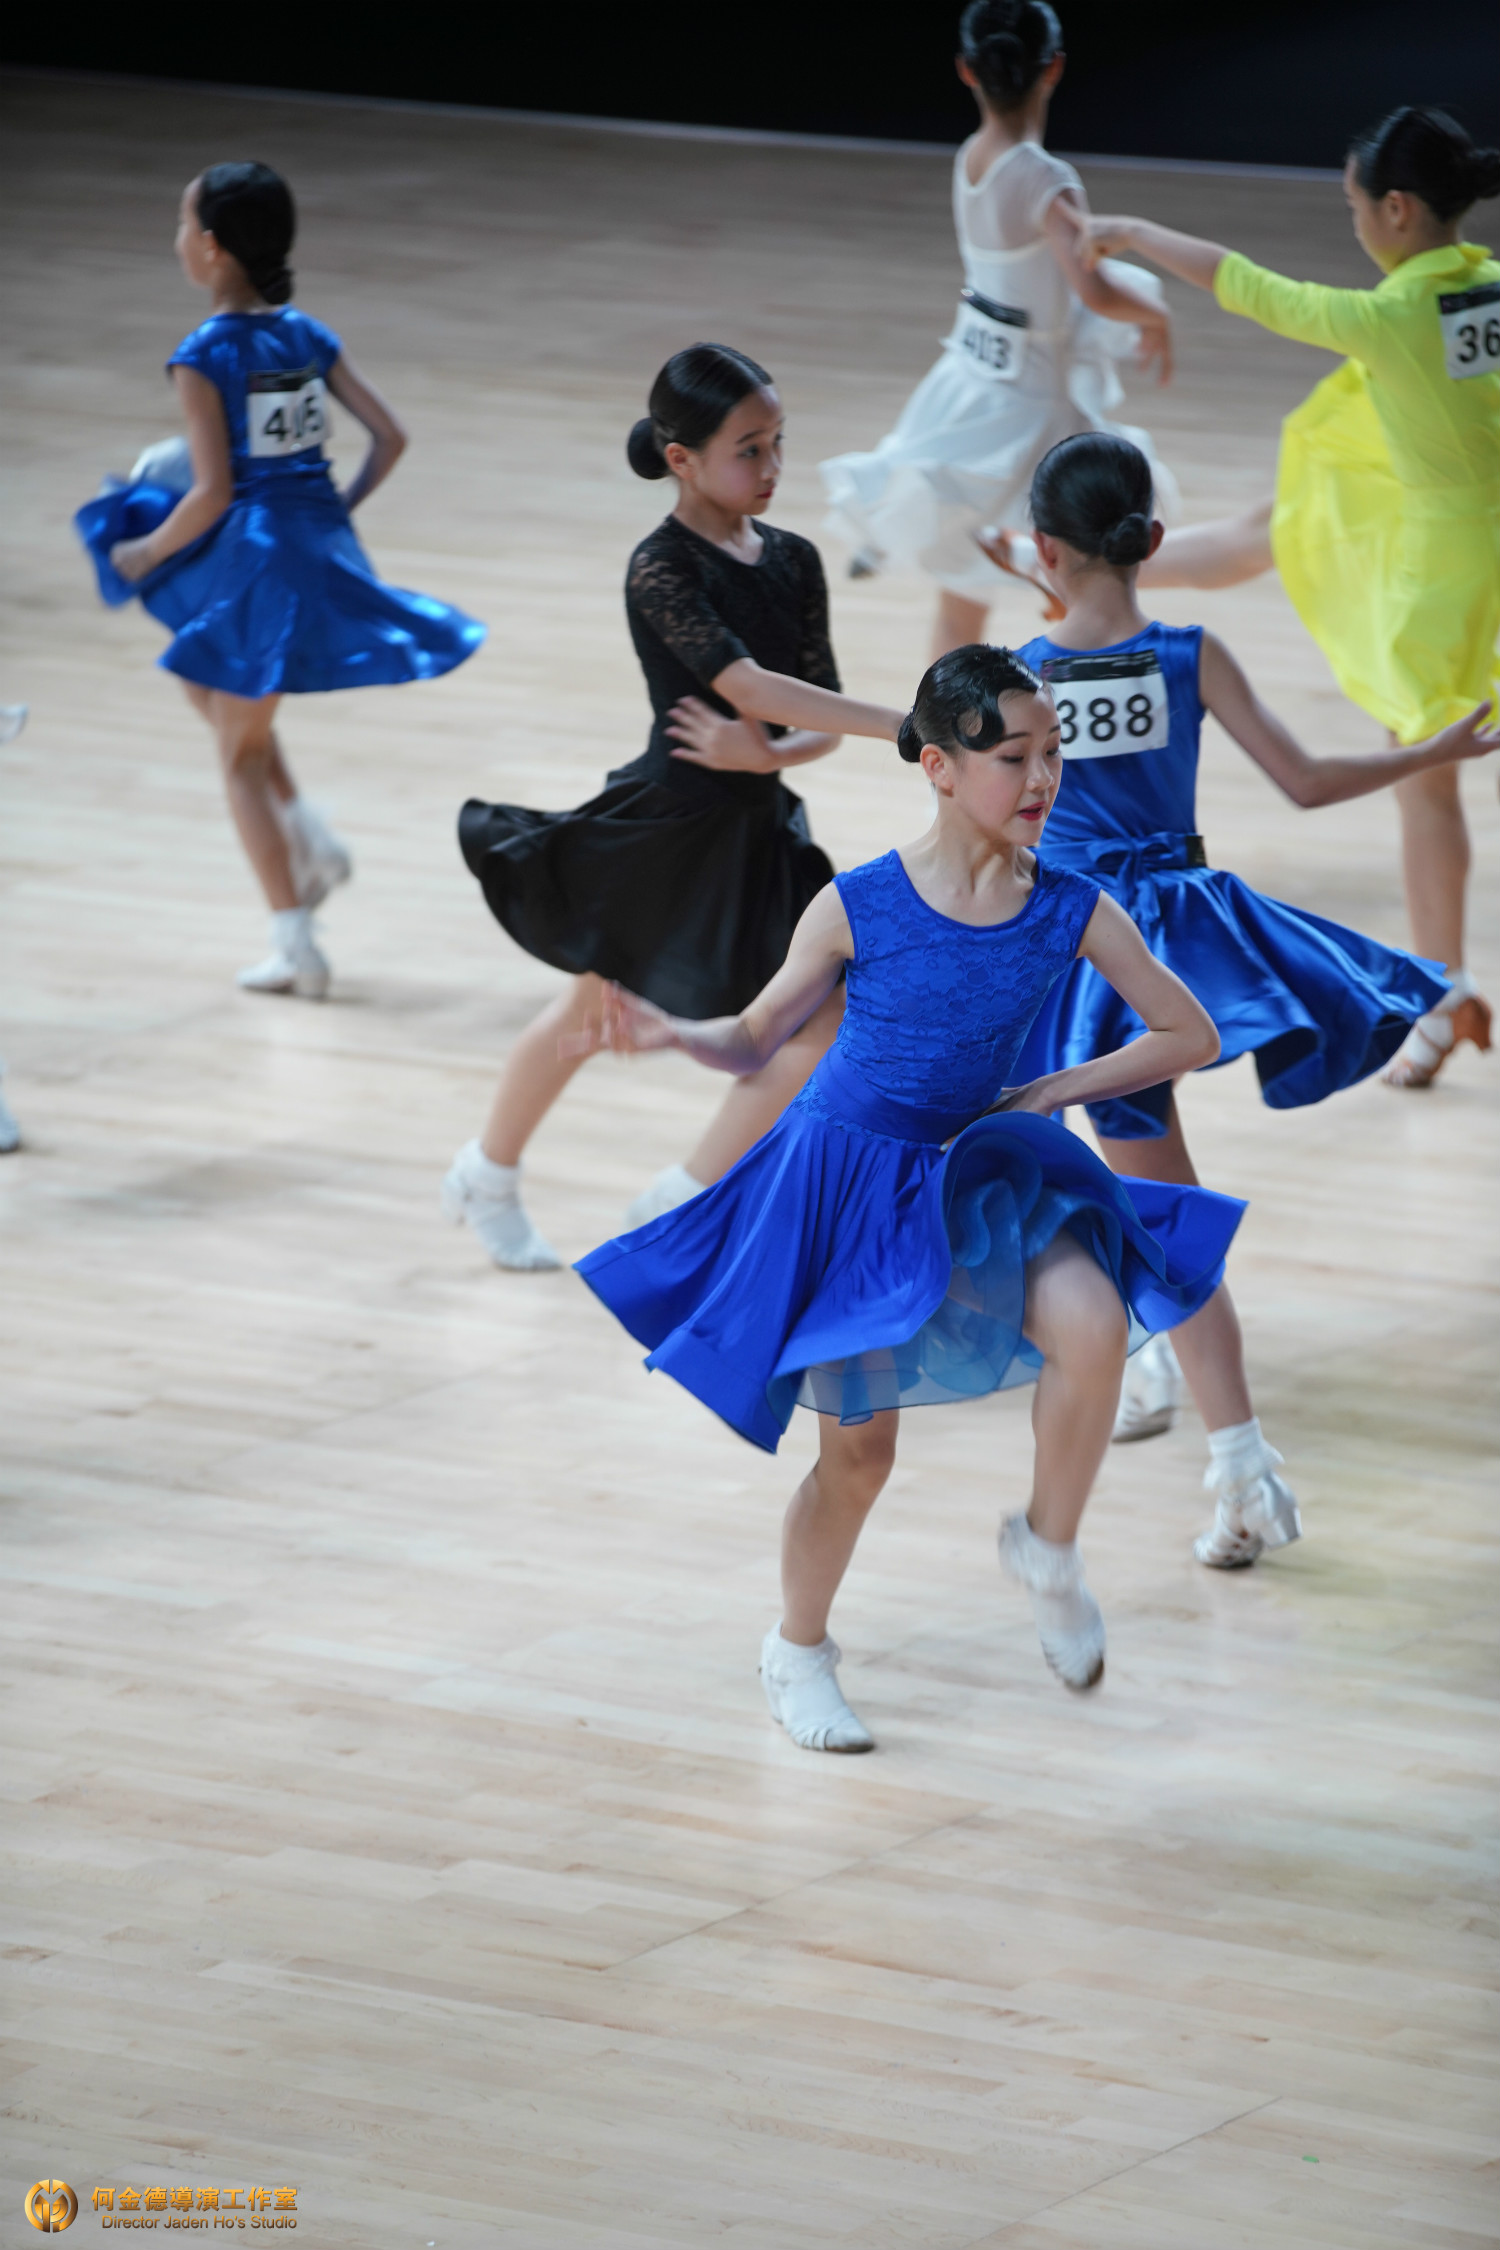 2018黑池舞蹈节中国16日开幕首日比赛12岁女单三项异常精彩